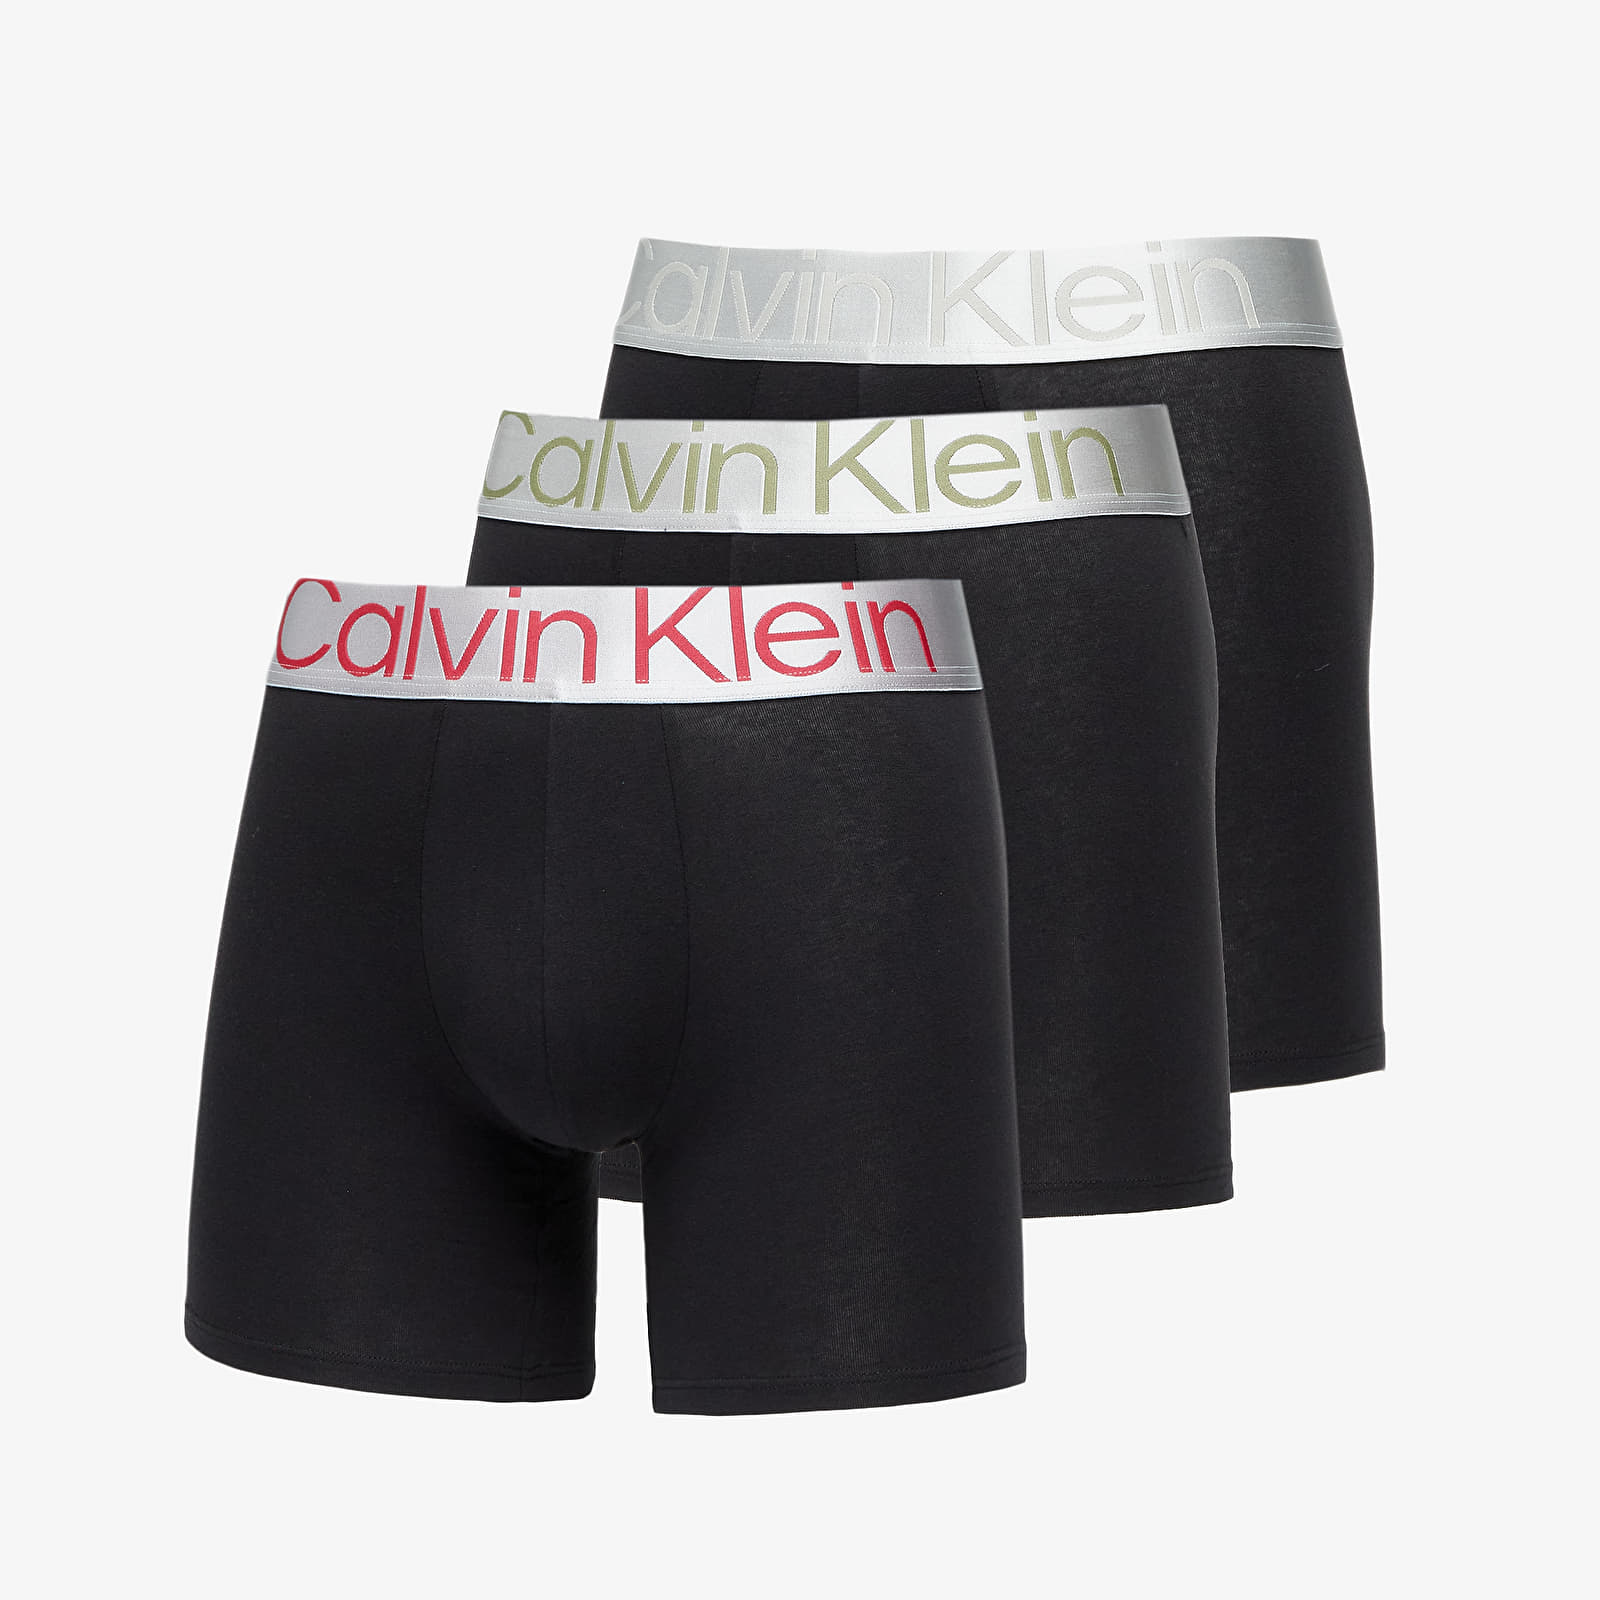 Boxershorts Calvin Klein Reconsidered Steel Cotton Boxer Brief 3-Pack Black/ Grey Heather